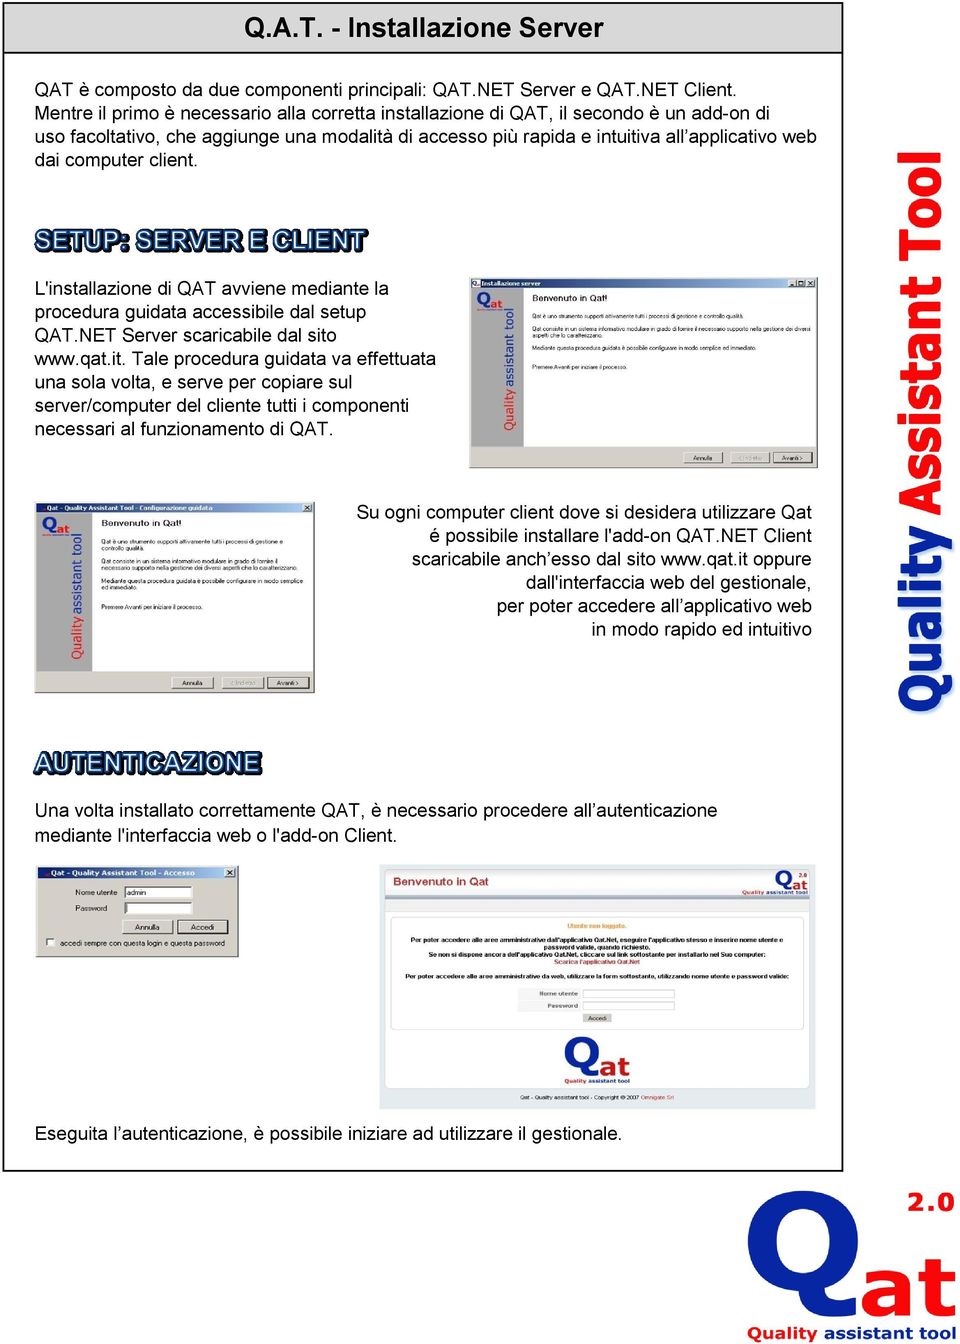 computer client. L'installazione di QAT avviene mediante la procedura guidata accessibile dal setup QAT.NET Server scaricabile dal sito